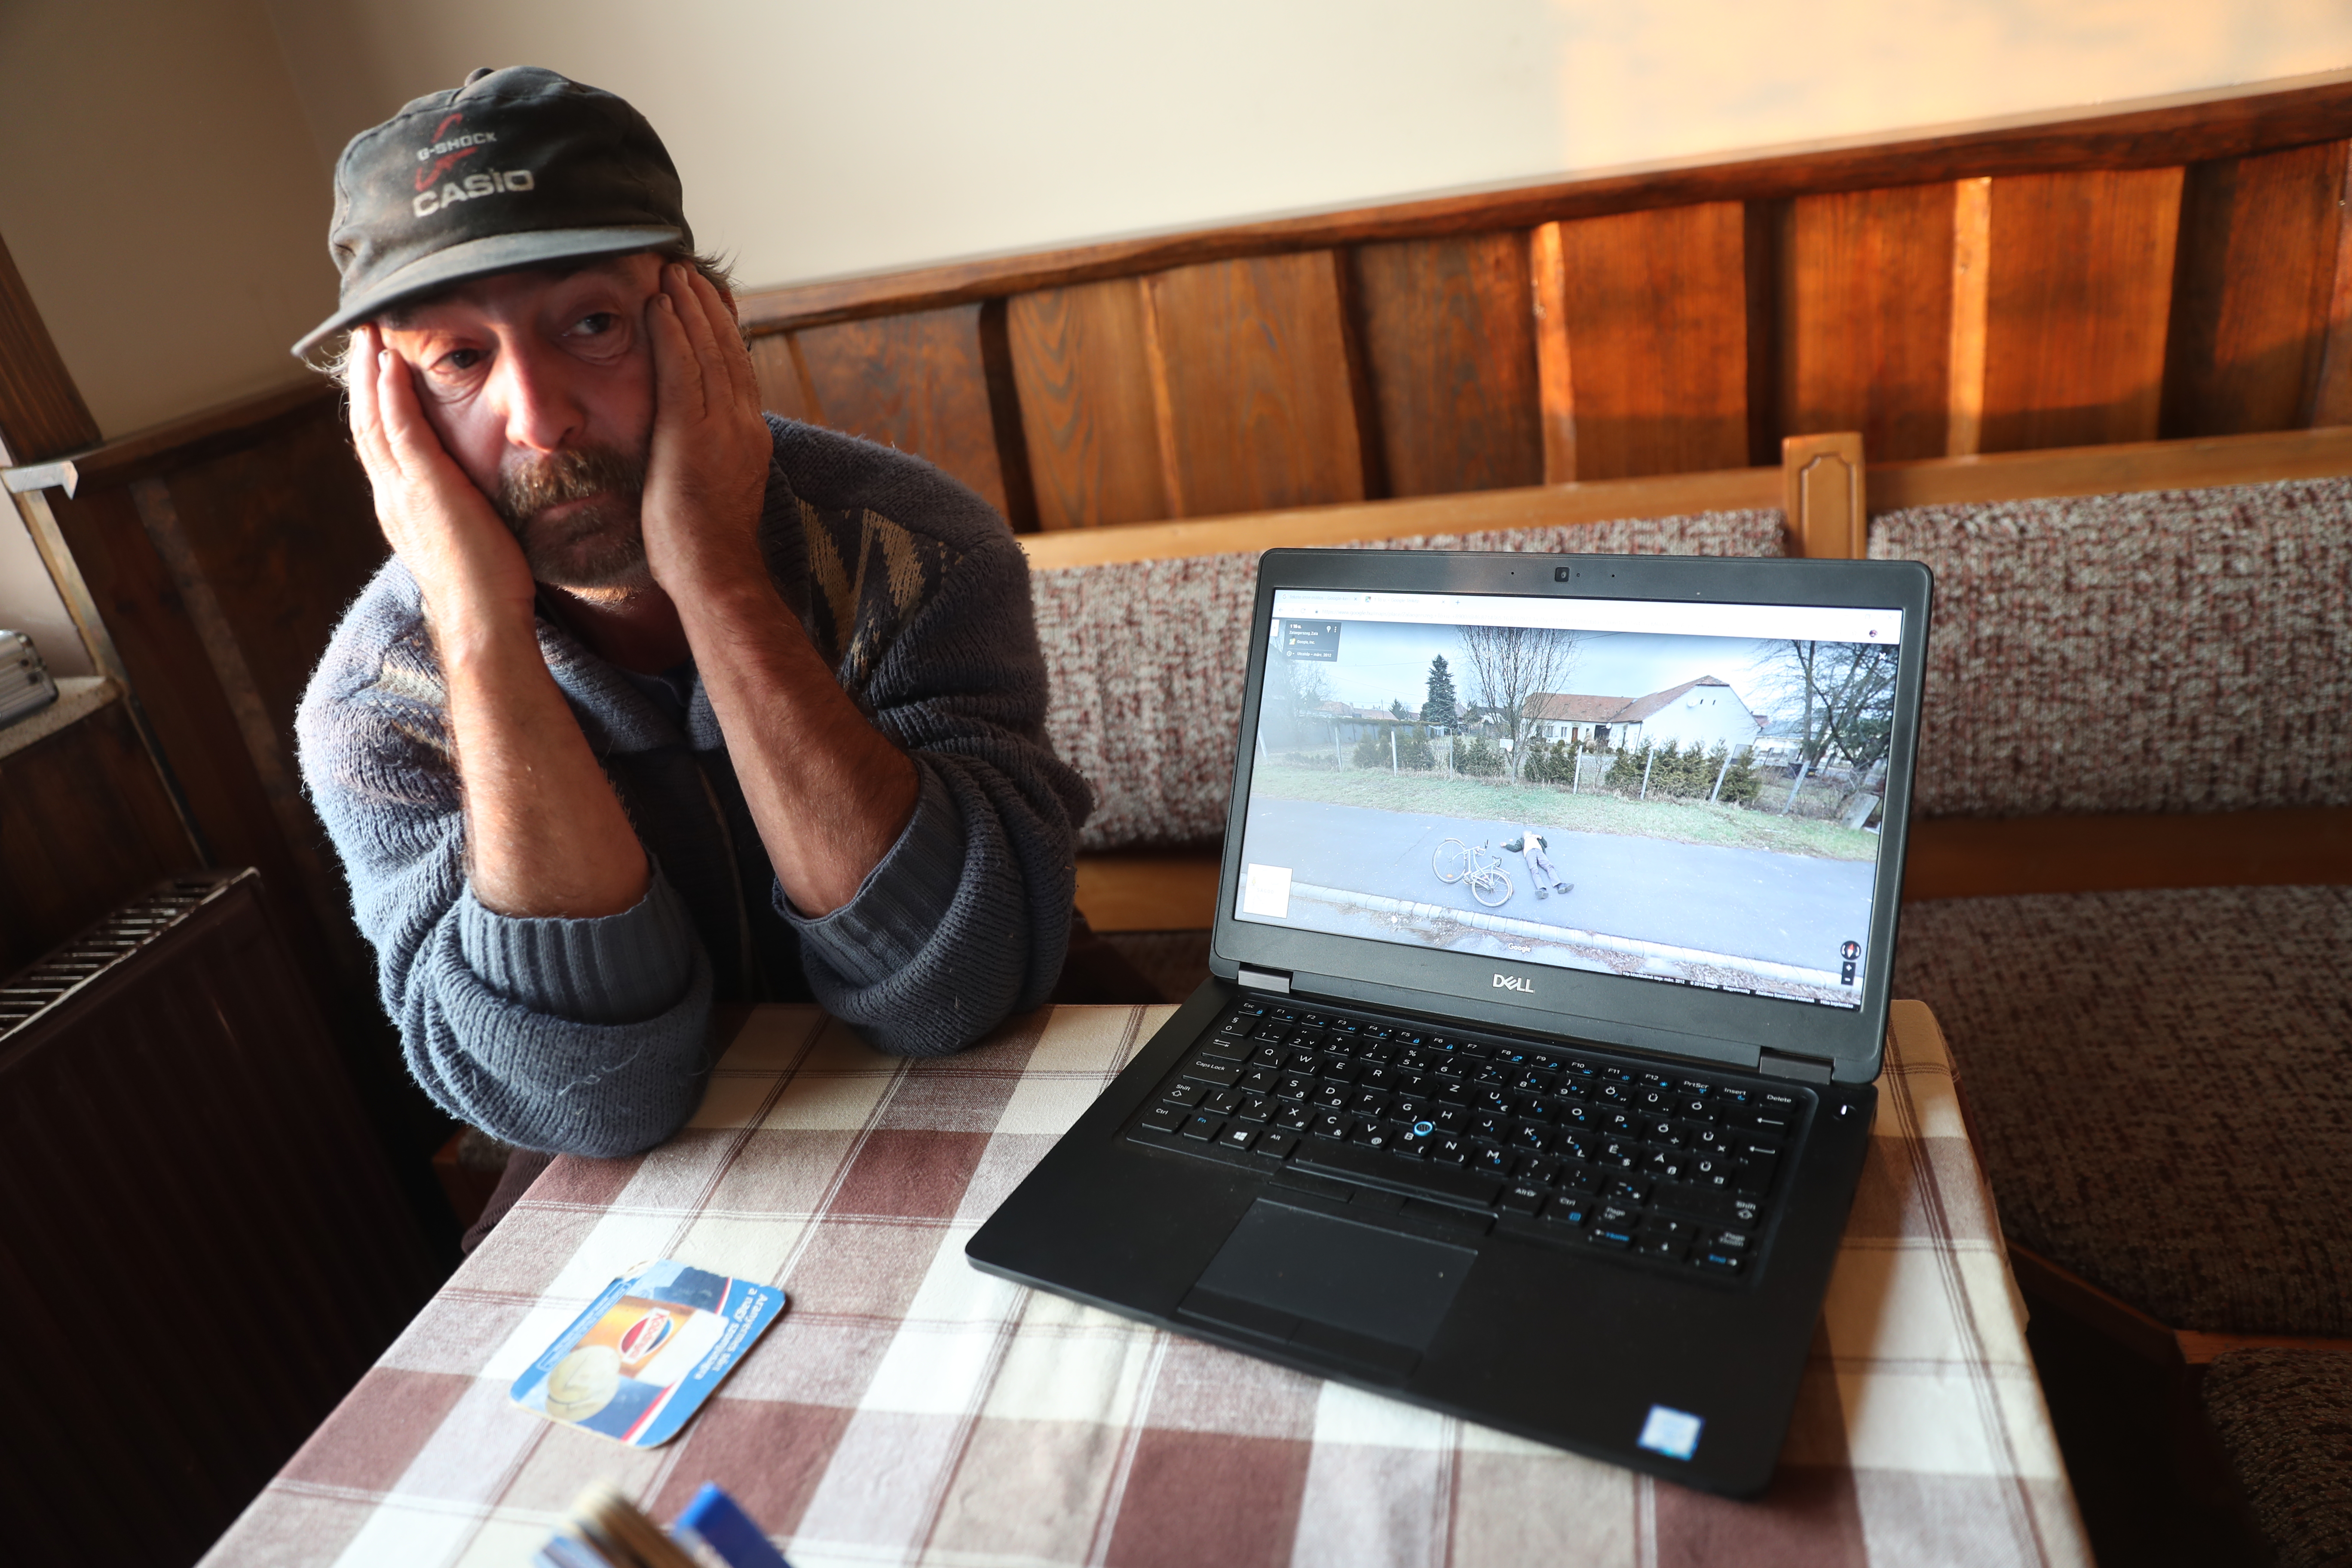 Megtaláltuk a Google bringás magyar hősét: így került a földre Imre a  biciklijével - Blikk